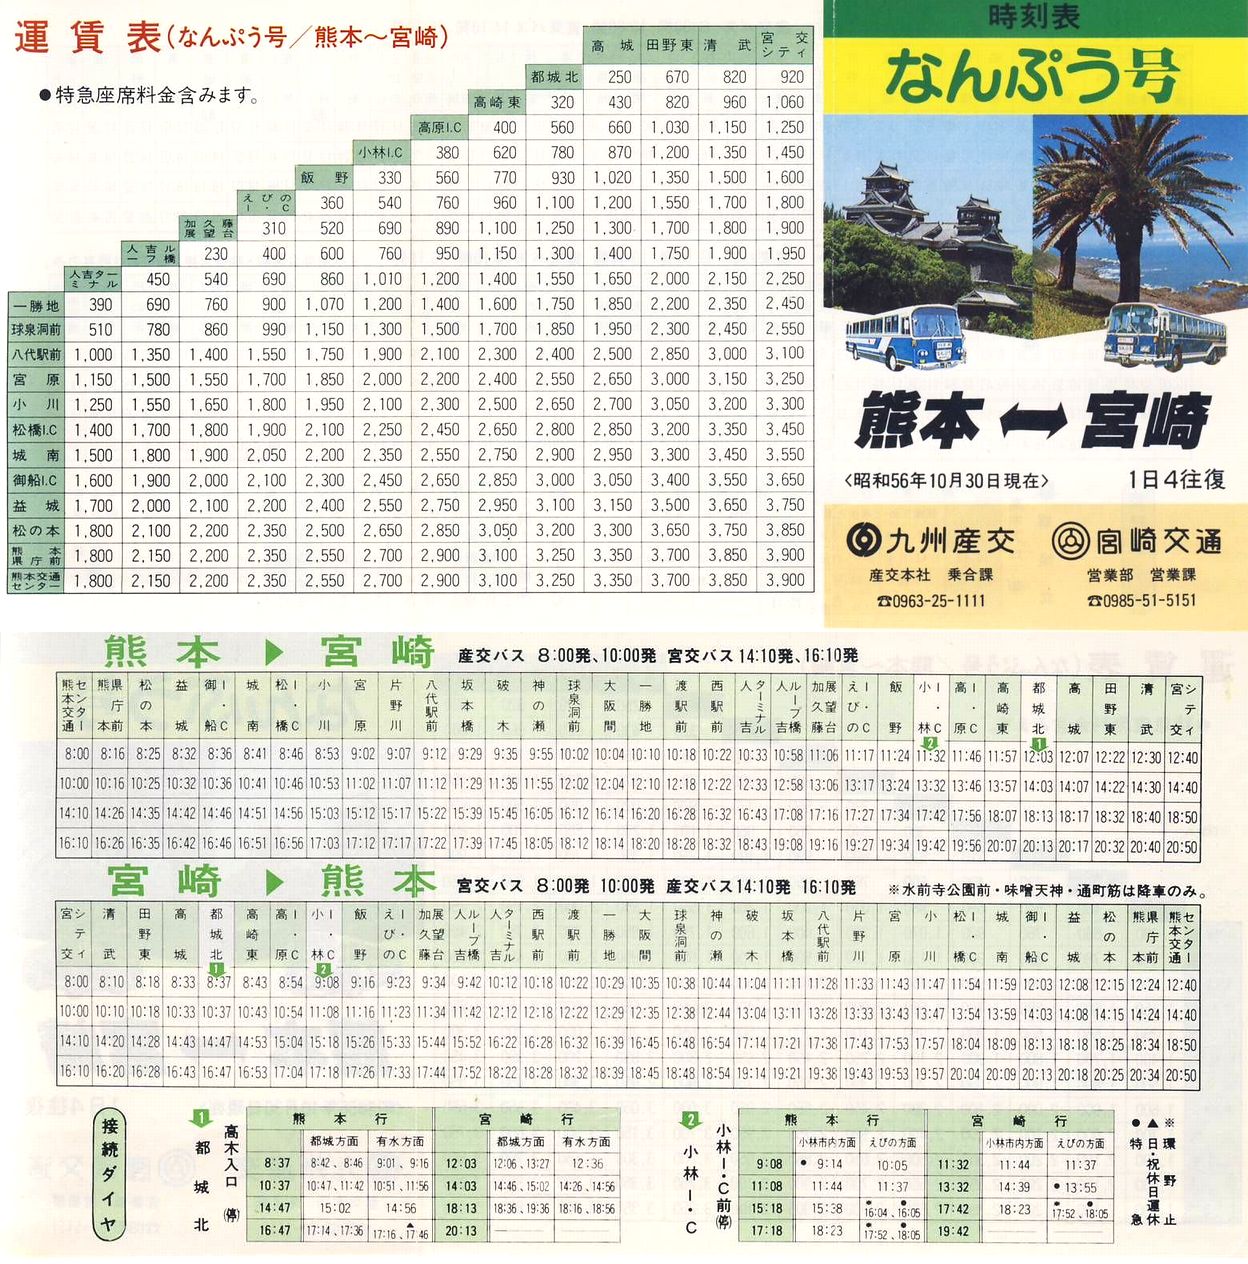 1981-10-30現在_九州産業交通・宮崎交通_なんぷう号時刻表